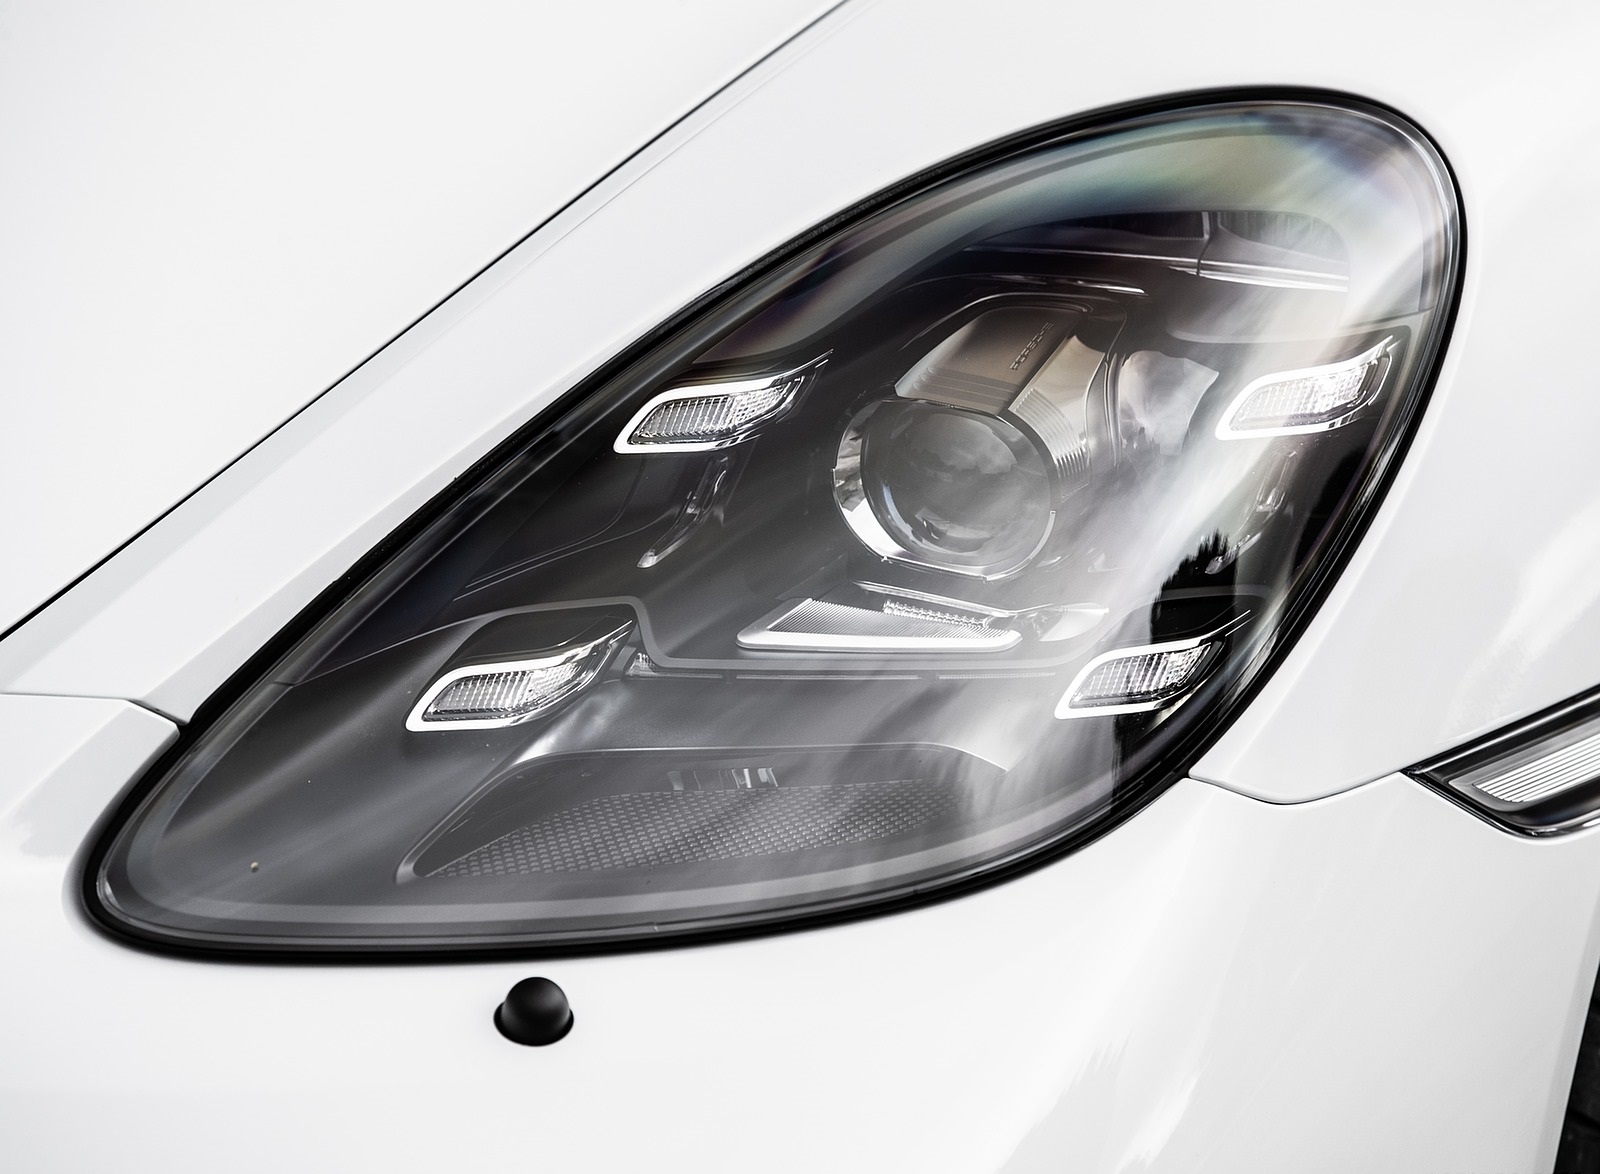 2020 Porsche 718 Spyder (Color: Carrara White Metallic) Headlight Wallpapers #145 of 295